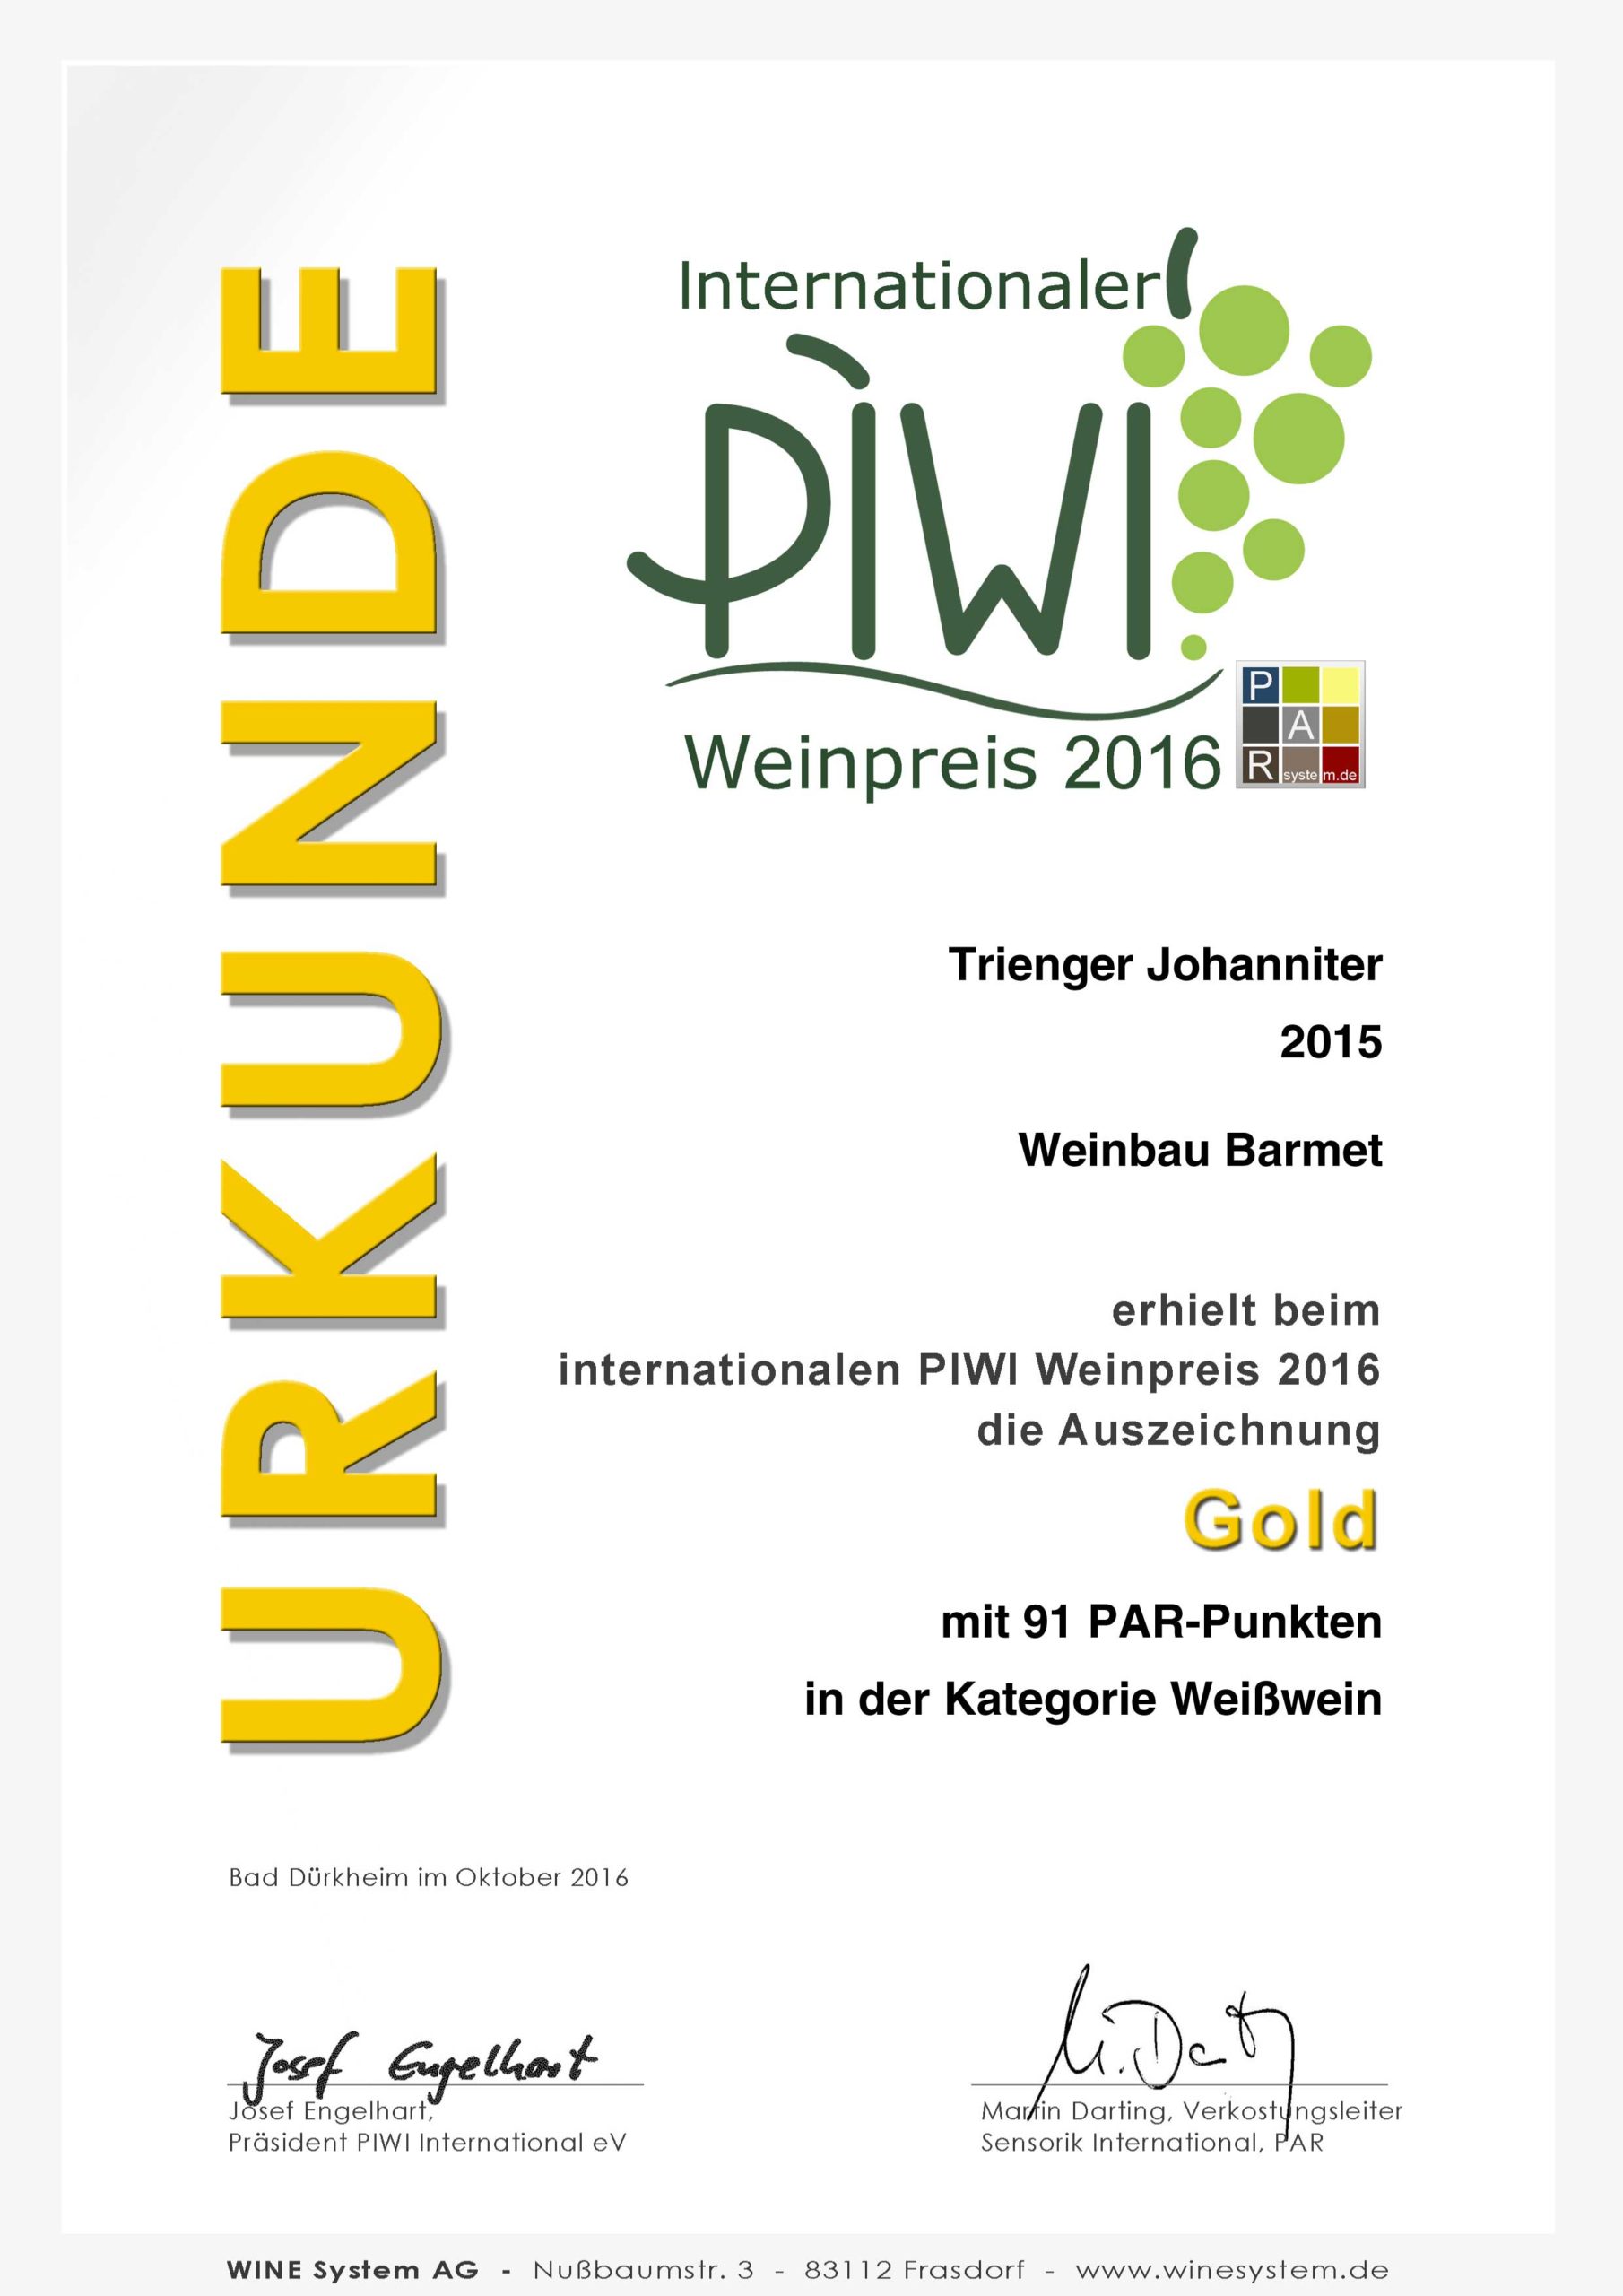 PIWI Weinpreis 2016 GOLD / Trienger Johanniter 2015